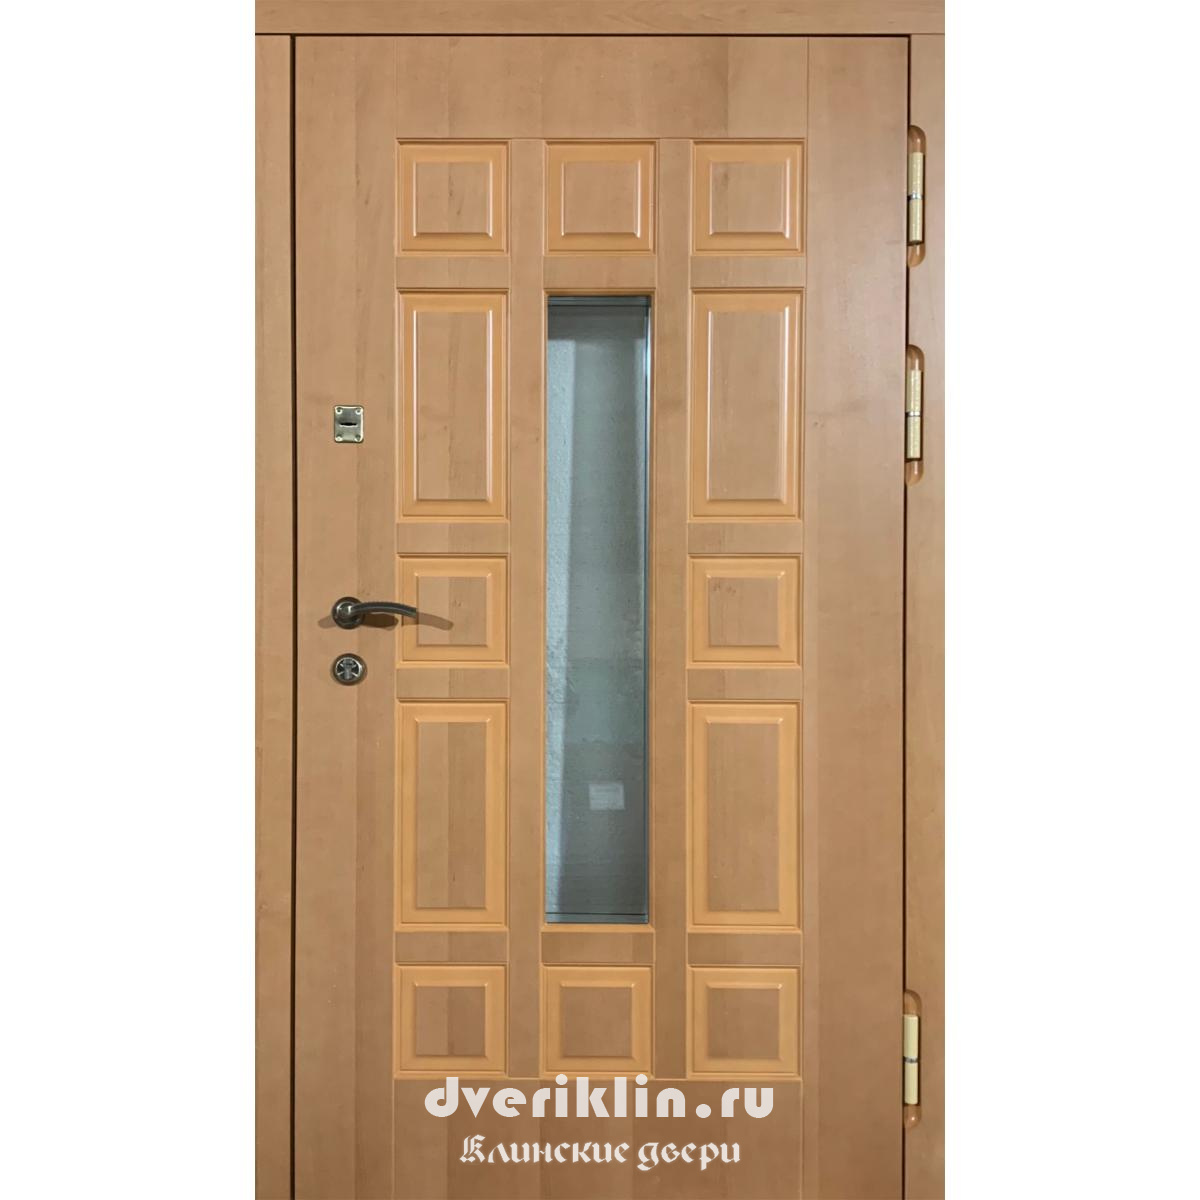 Дверь в дом MDD-32 (В частный дом)